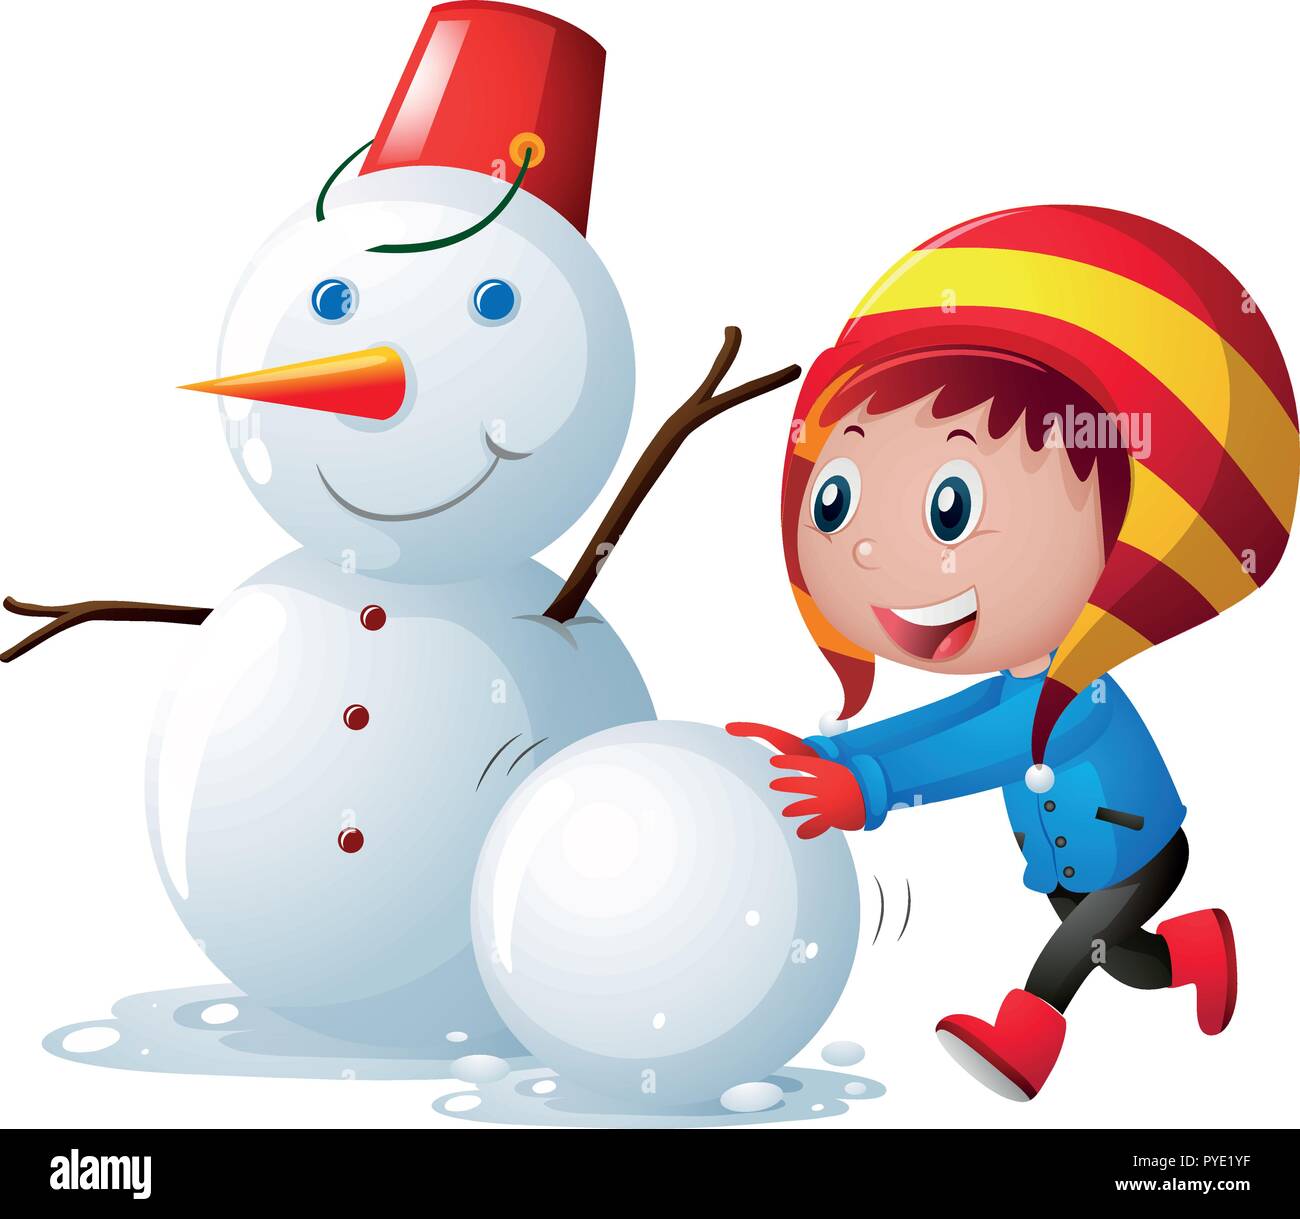 Little kid making snowman illustration Stock Vector